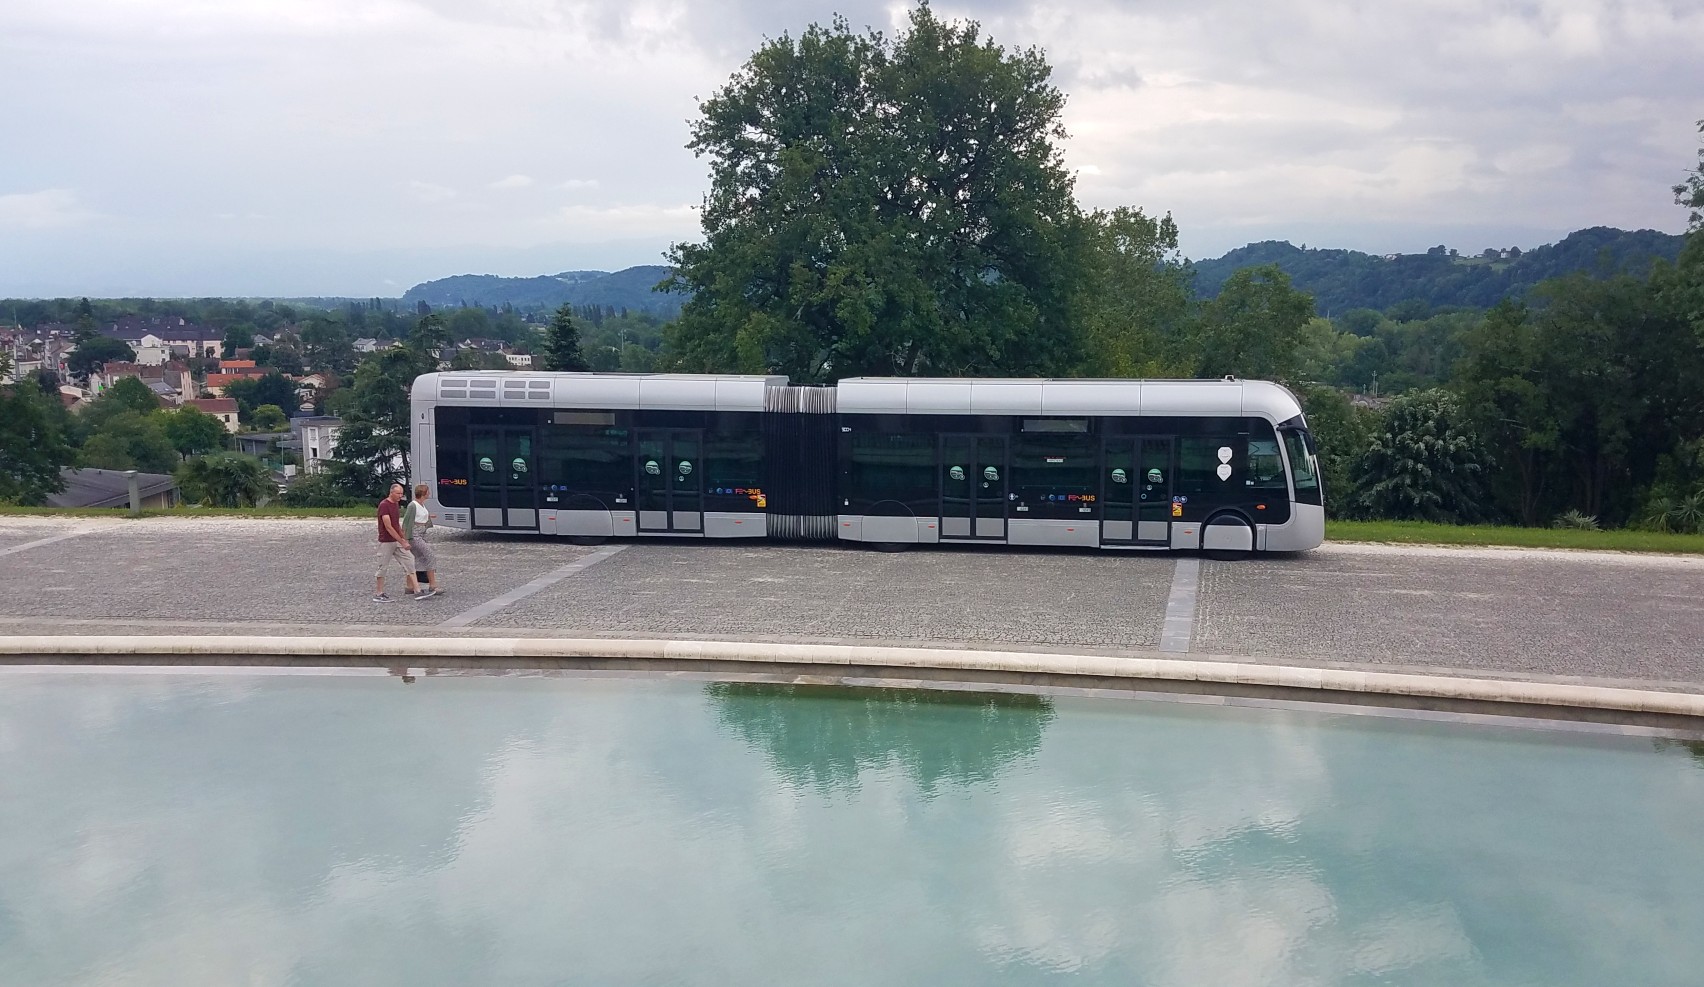 Le bus fébus en exposition au Palais beaumont, lors des journées hydrogène à Pau